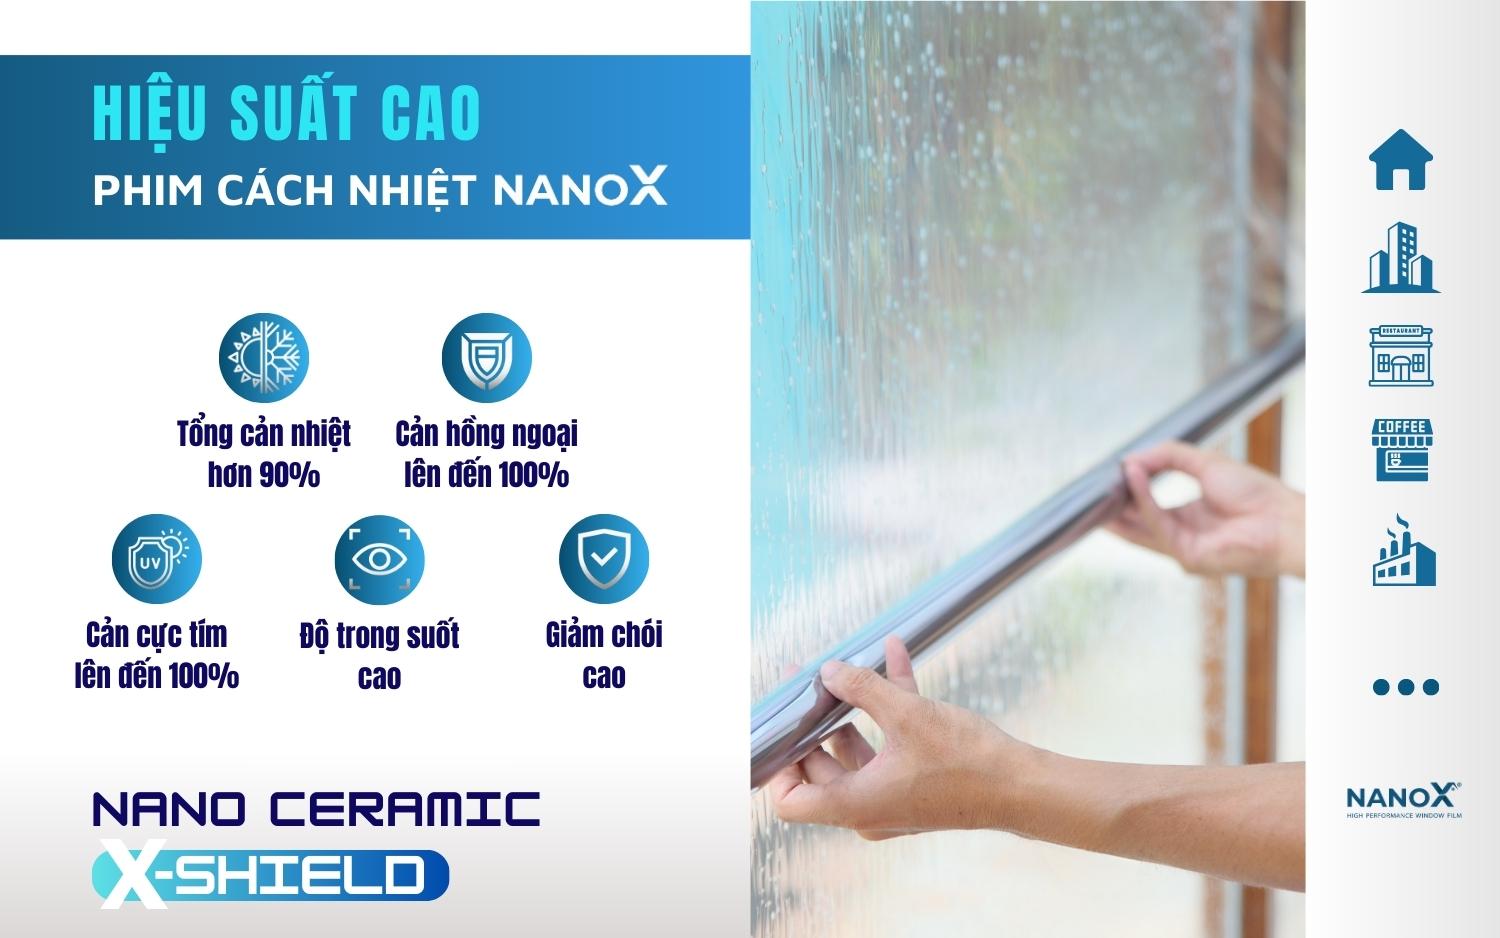 Phim cách nhiệt NanoX hiệu suất cao với công nghệ Nano Ceramic X-Shield